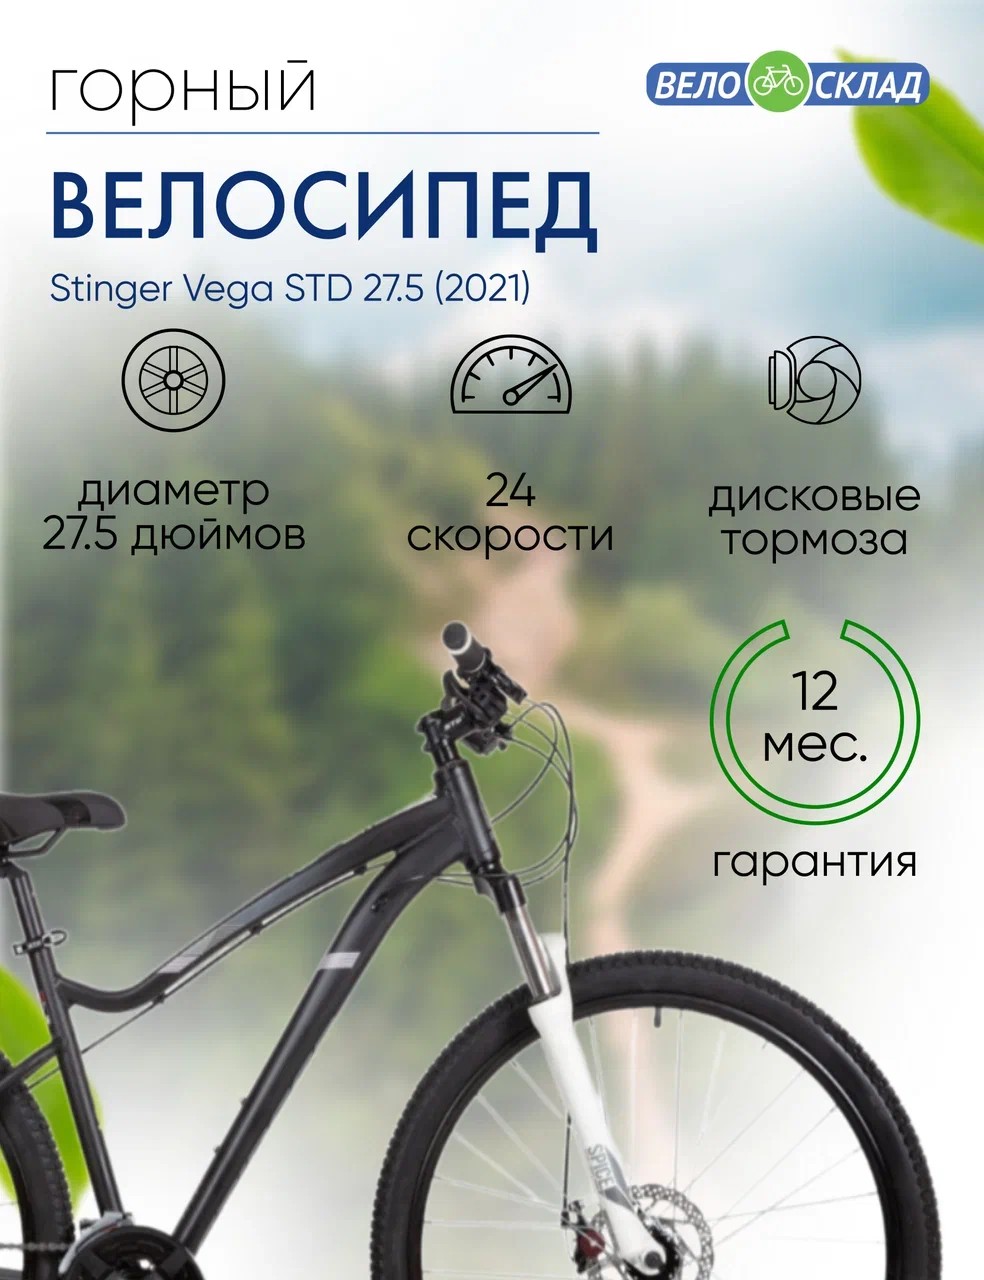 Женский велосипед Stinger Vega STD 27.5, год 2021, цвет Черный, ростовка 17